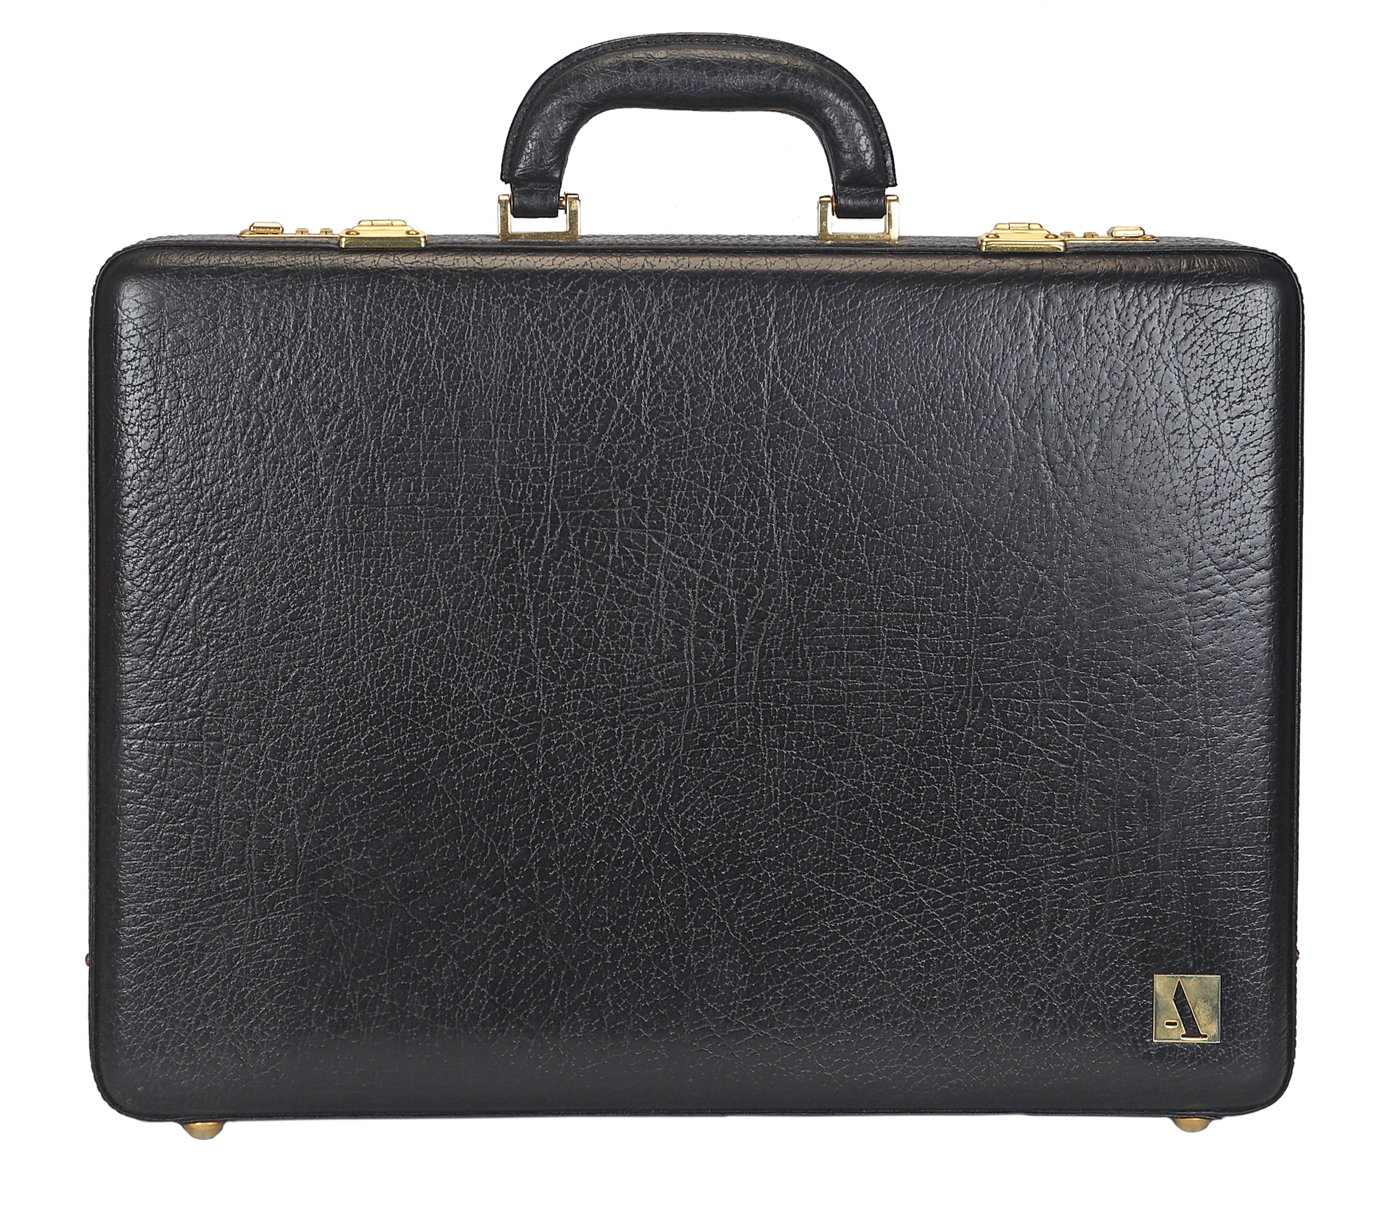  Leather Briefcase / Attache's(Black)BC14